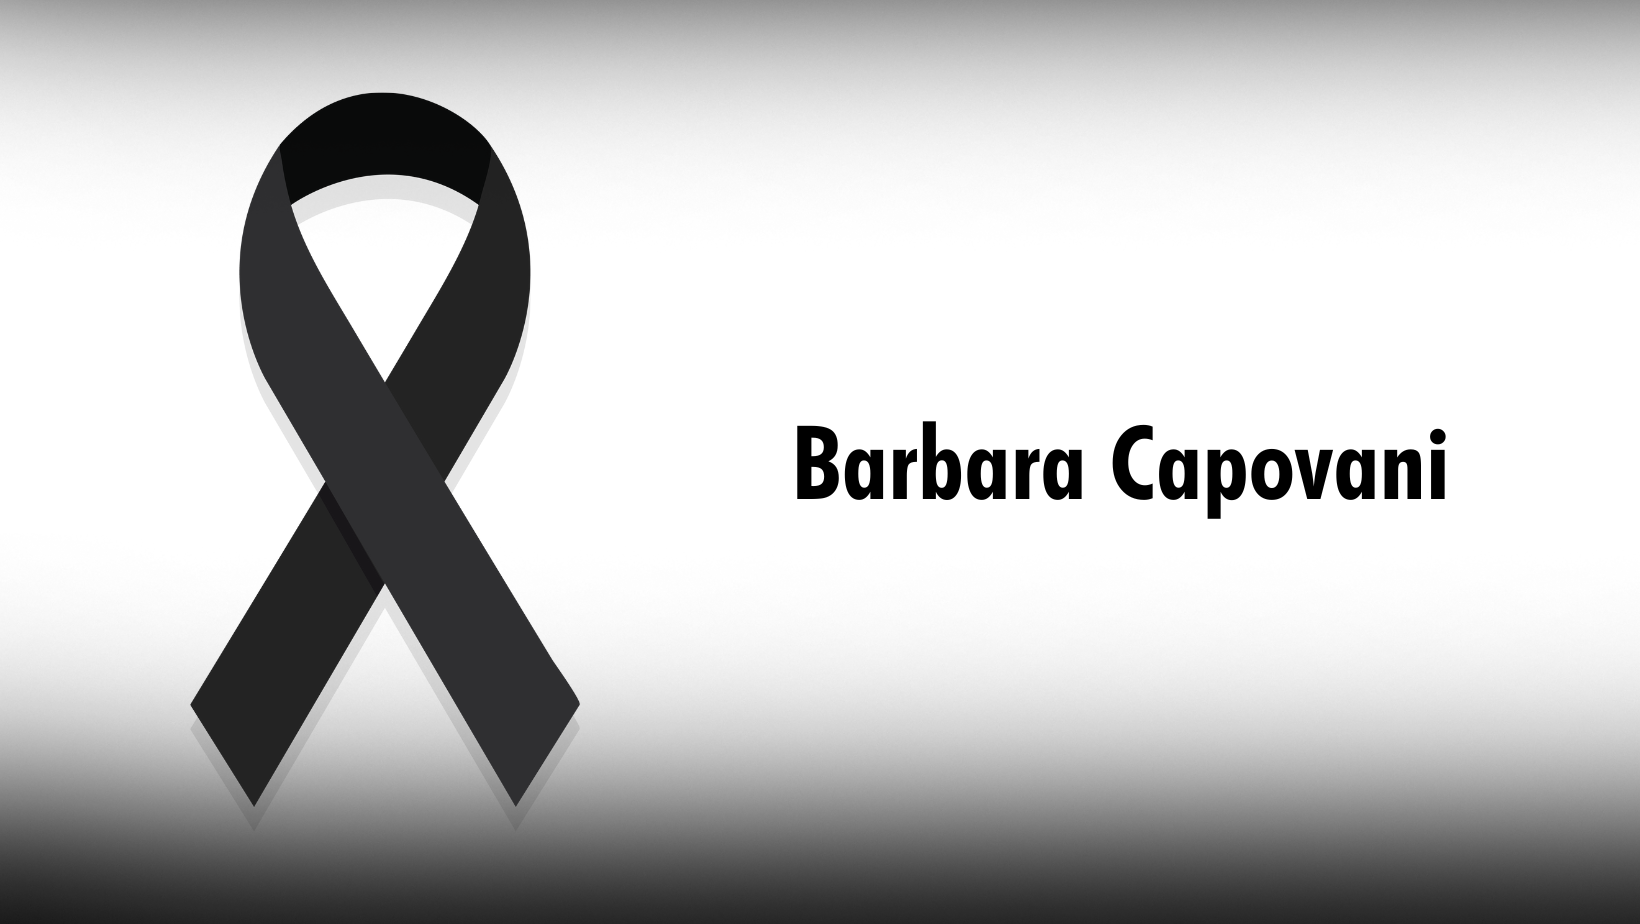 In ricordo di Barbara Capovani, perchè non succeda più